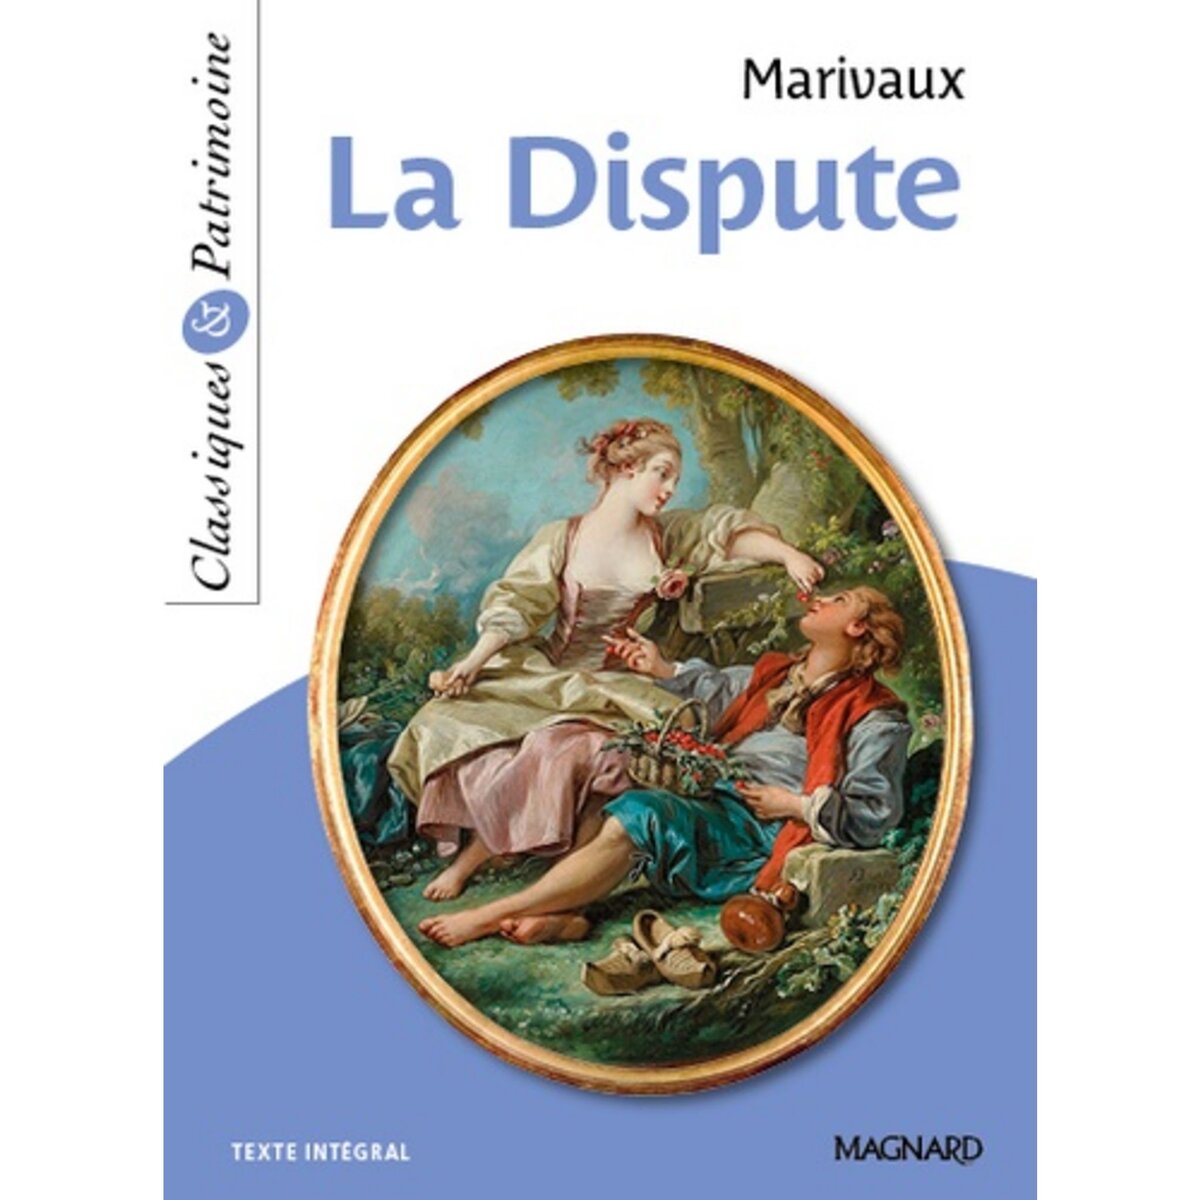  LA DISPUTE, Marivaux Pierre de